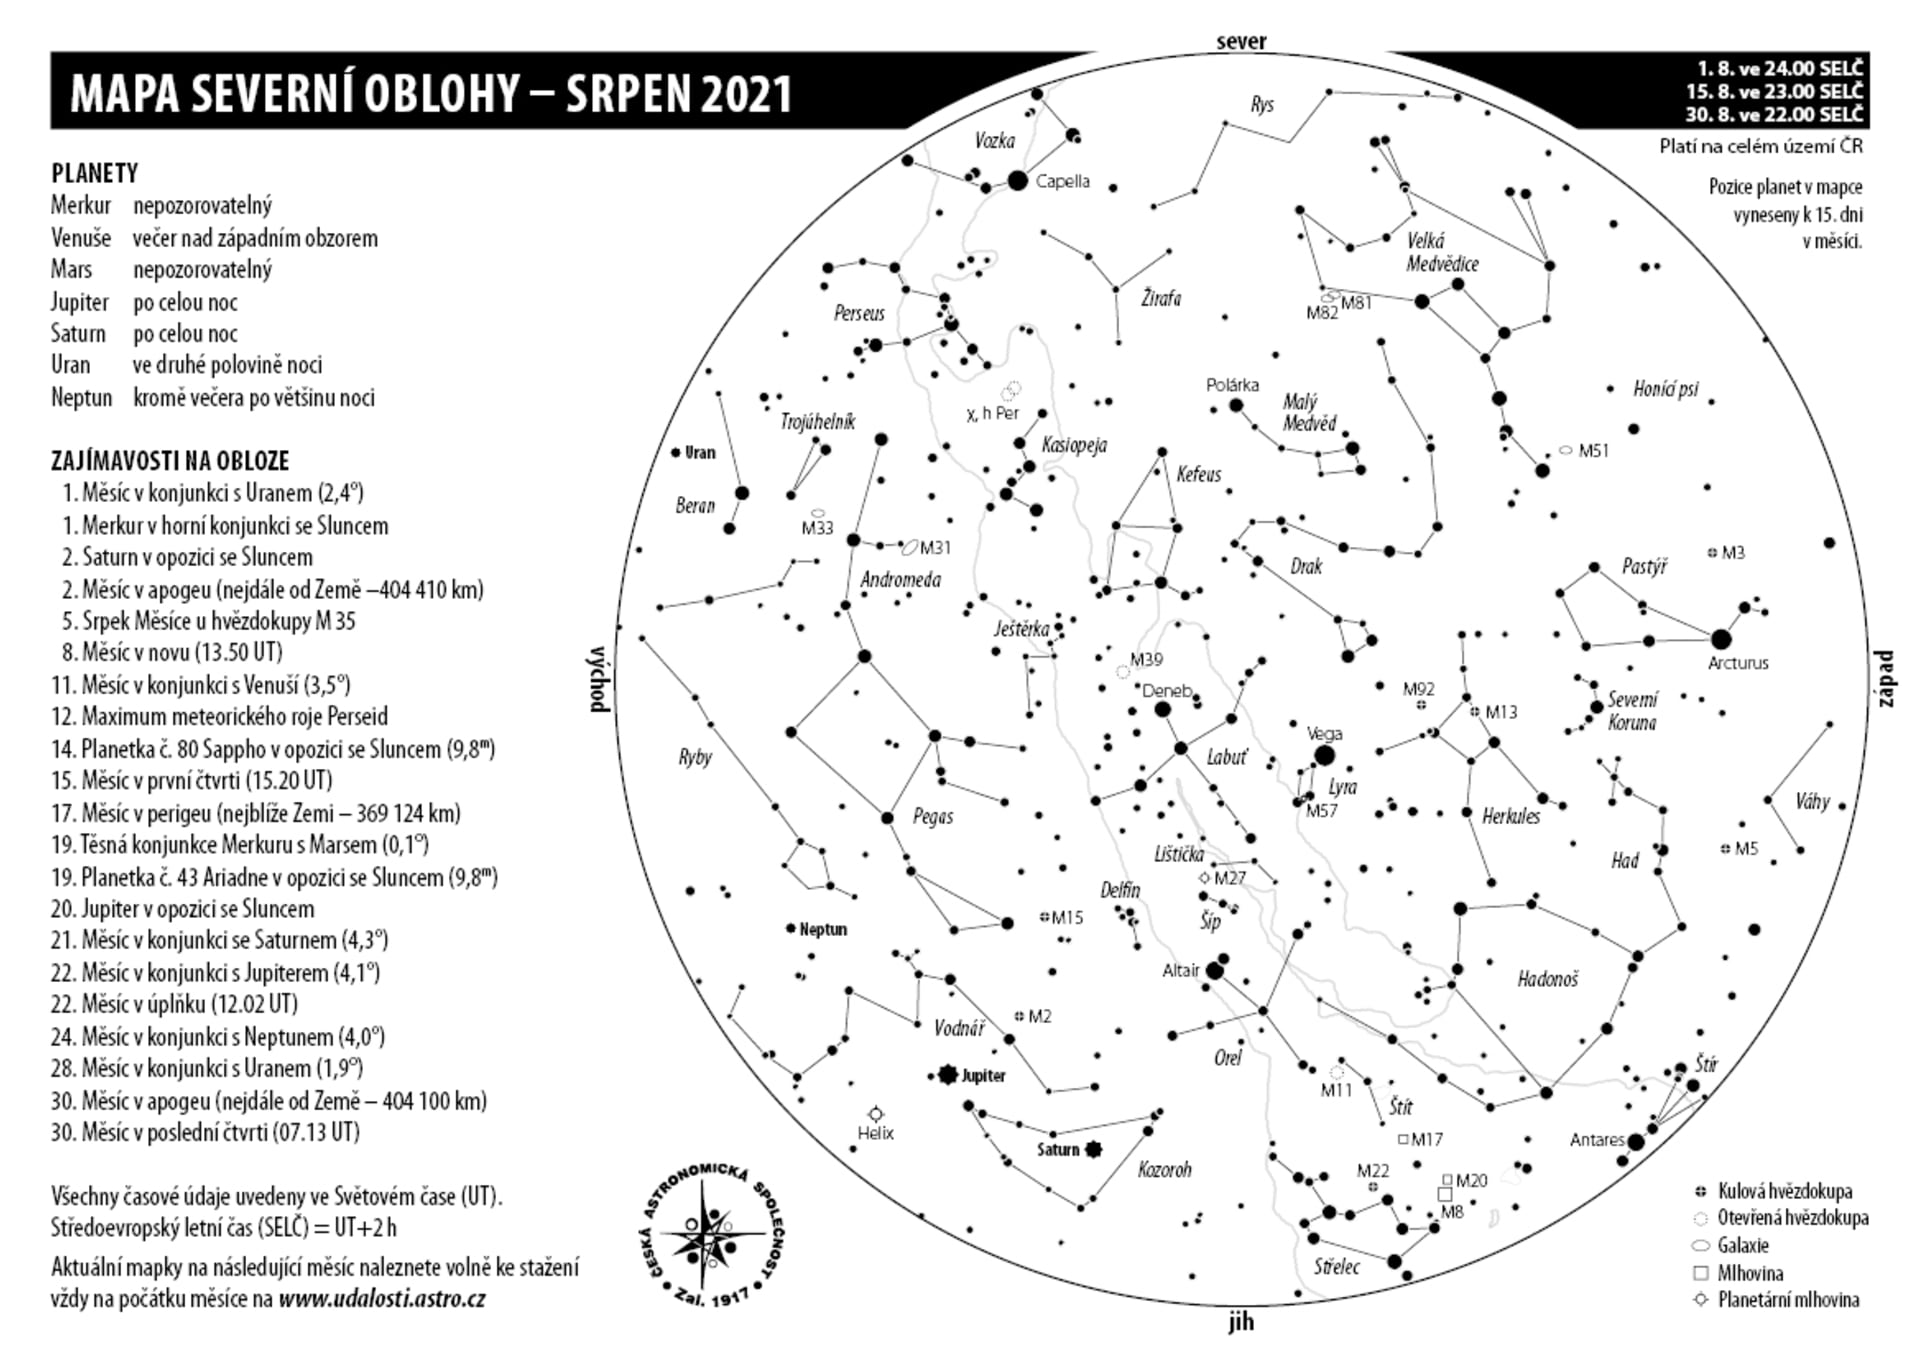 Viditelná souhvězdí, hvězdy a další objekty na noční obloze v průběhu srpna 2021